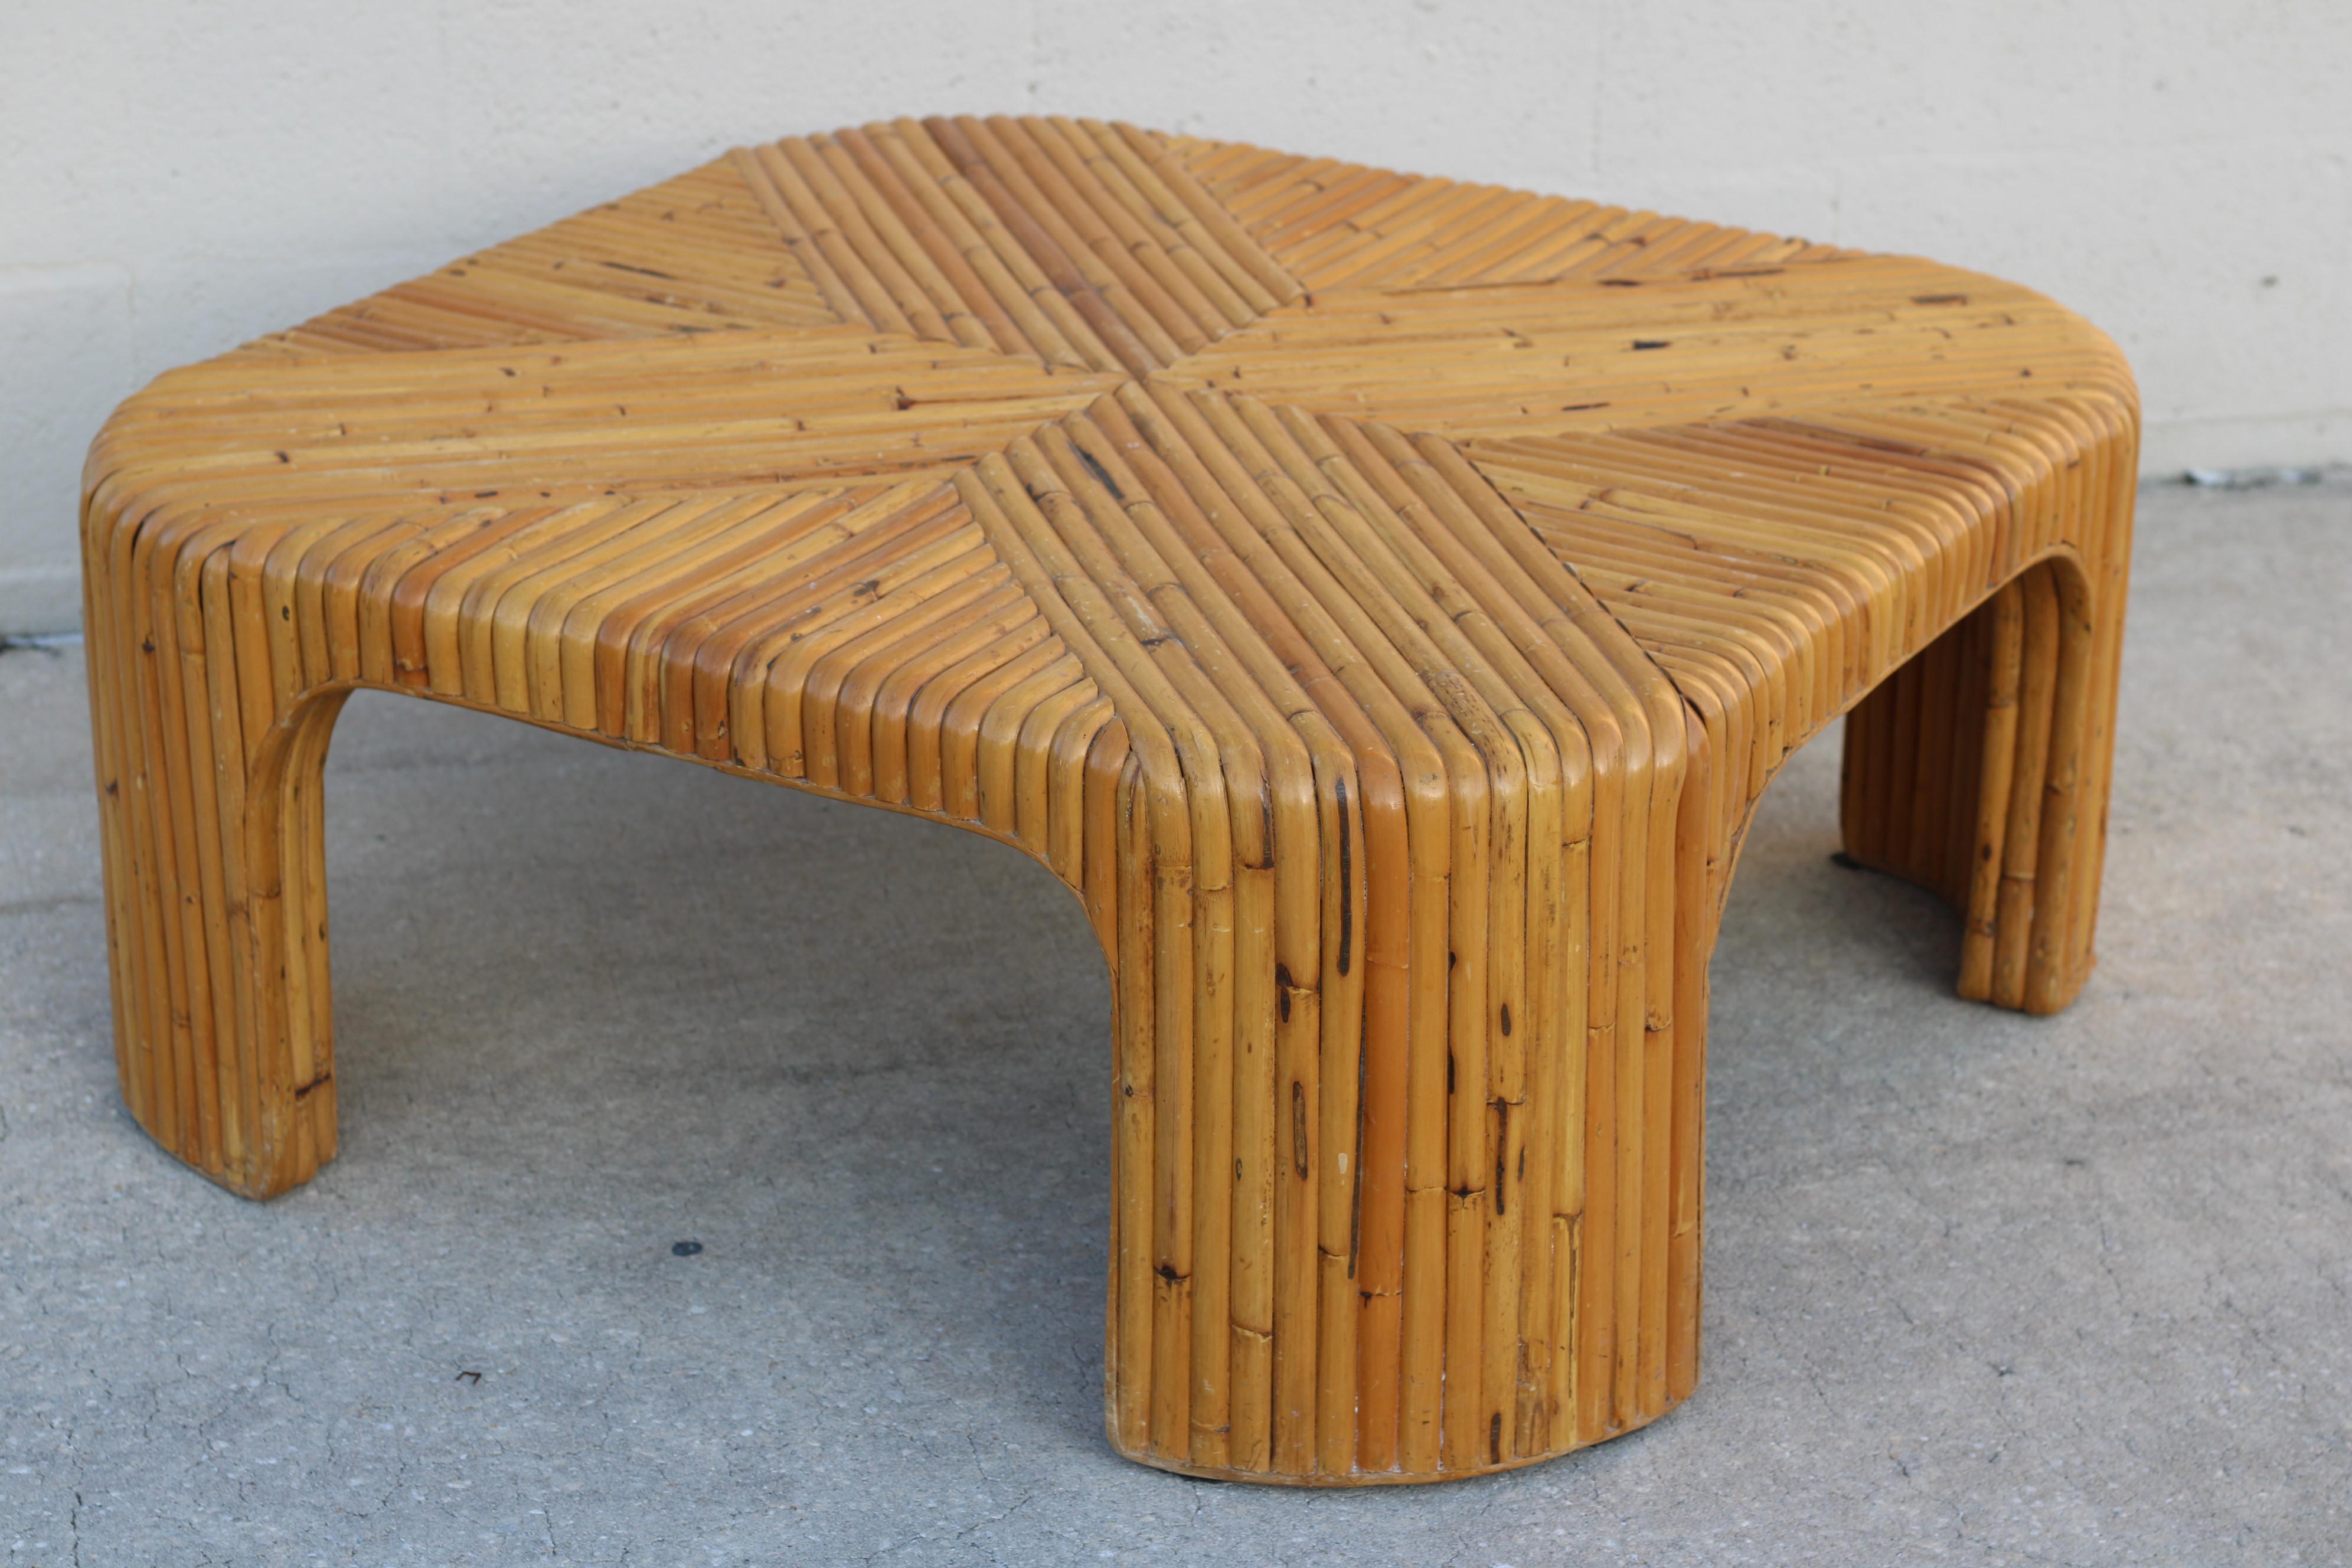 Vintage organisch-moderner Couchtisch aus gespaltenem Bambus mit ausgeprägtem geometrischem Muster, ca. 1970er Jahre. Dieser robuste Tisch, der auf den Philippinen fachmännisch hergestellt wird, ist ein schönes und nützliches Möbelstück, das einen